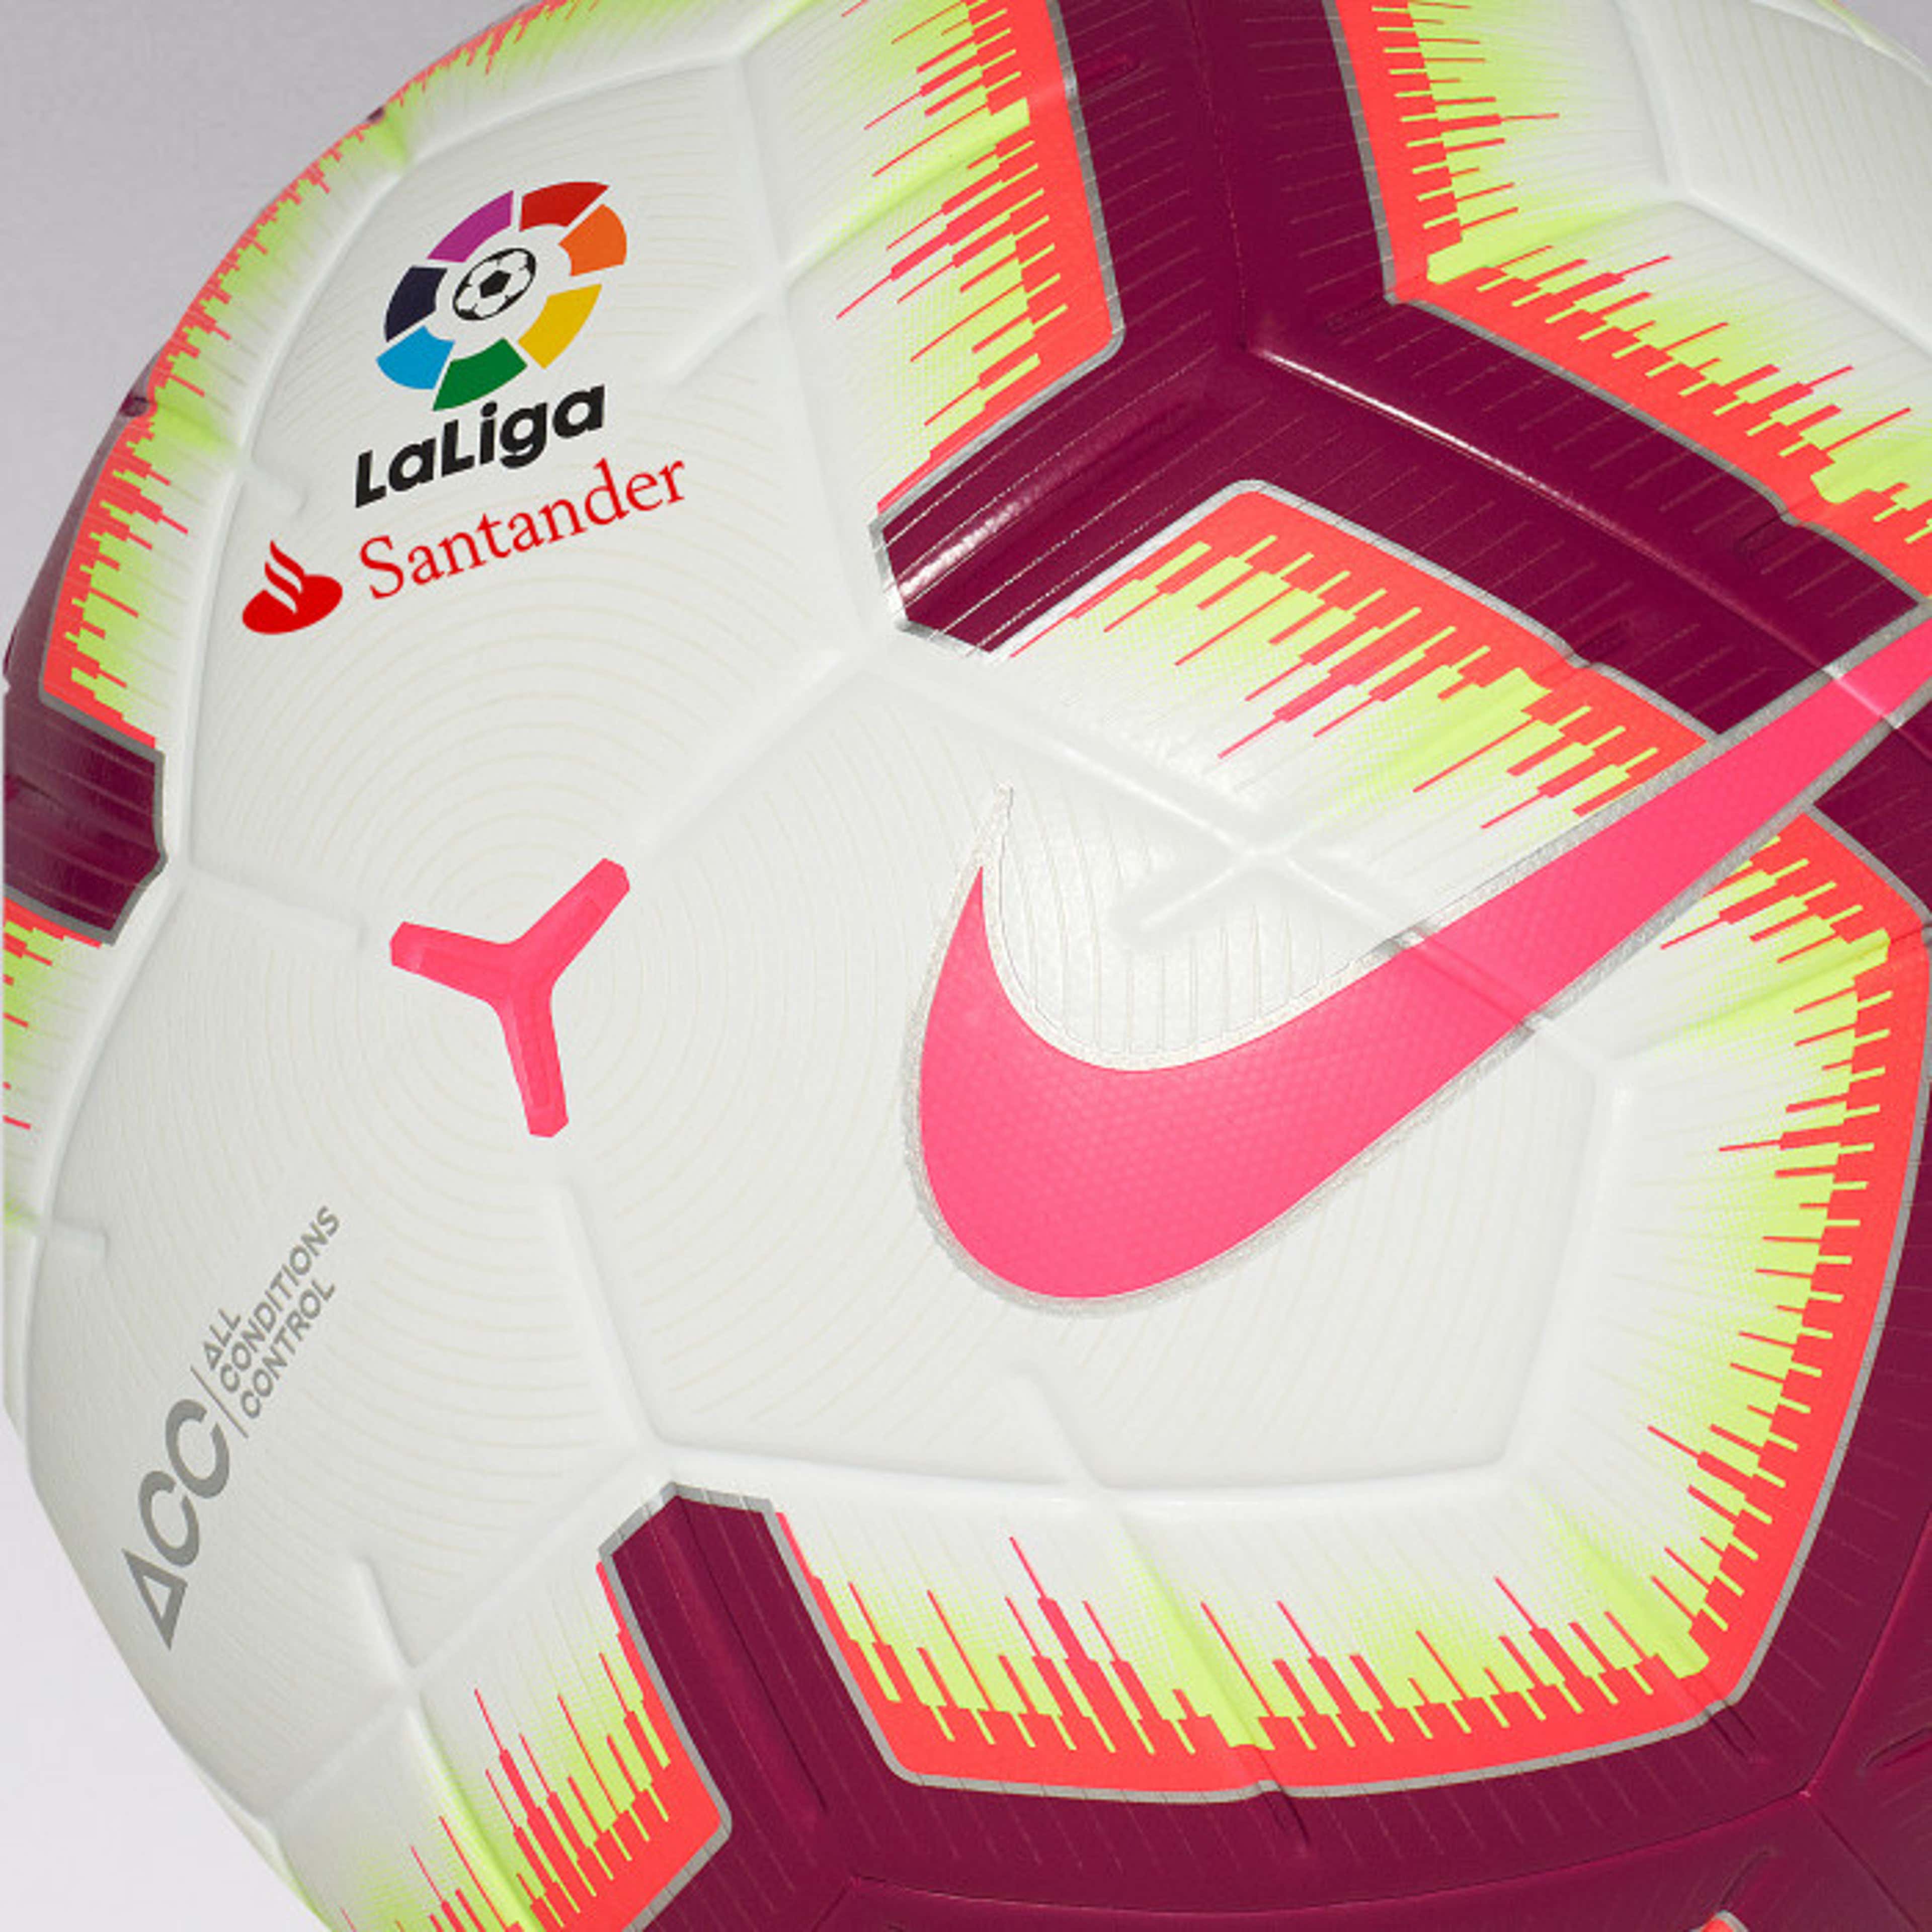 Cuál es la pelota oficial LaLiga Santander para la temporada Costo, características y más | Goal.com Espana